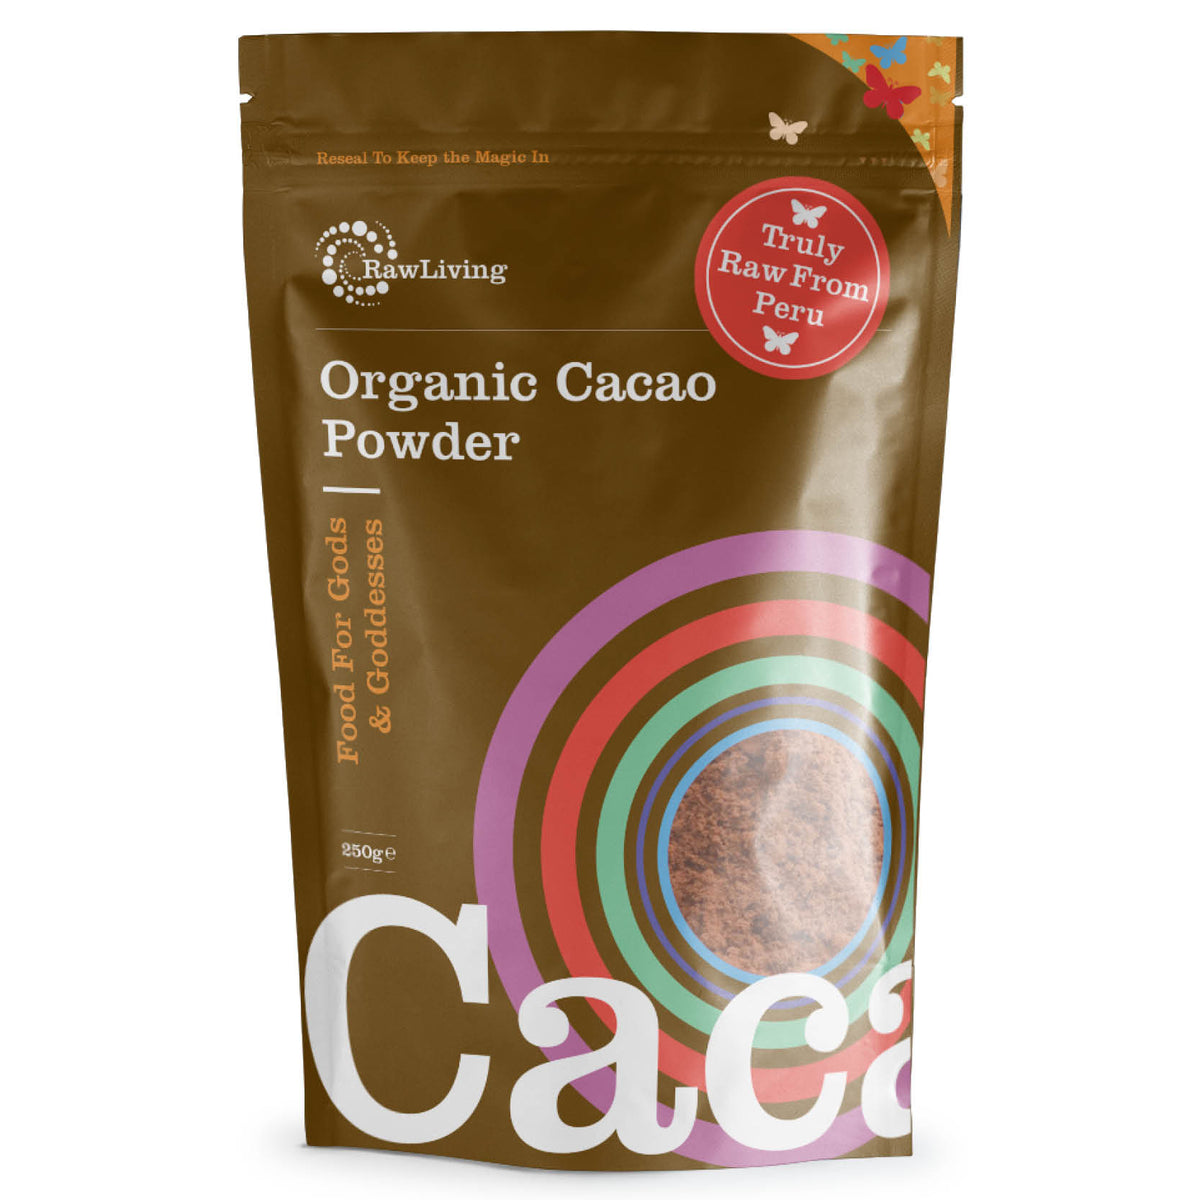 Truly Raw Peruvian Cacao Powder - Organic (250g)